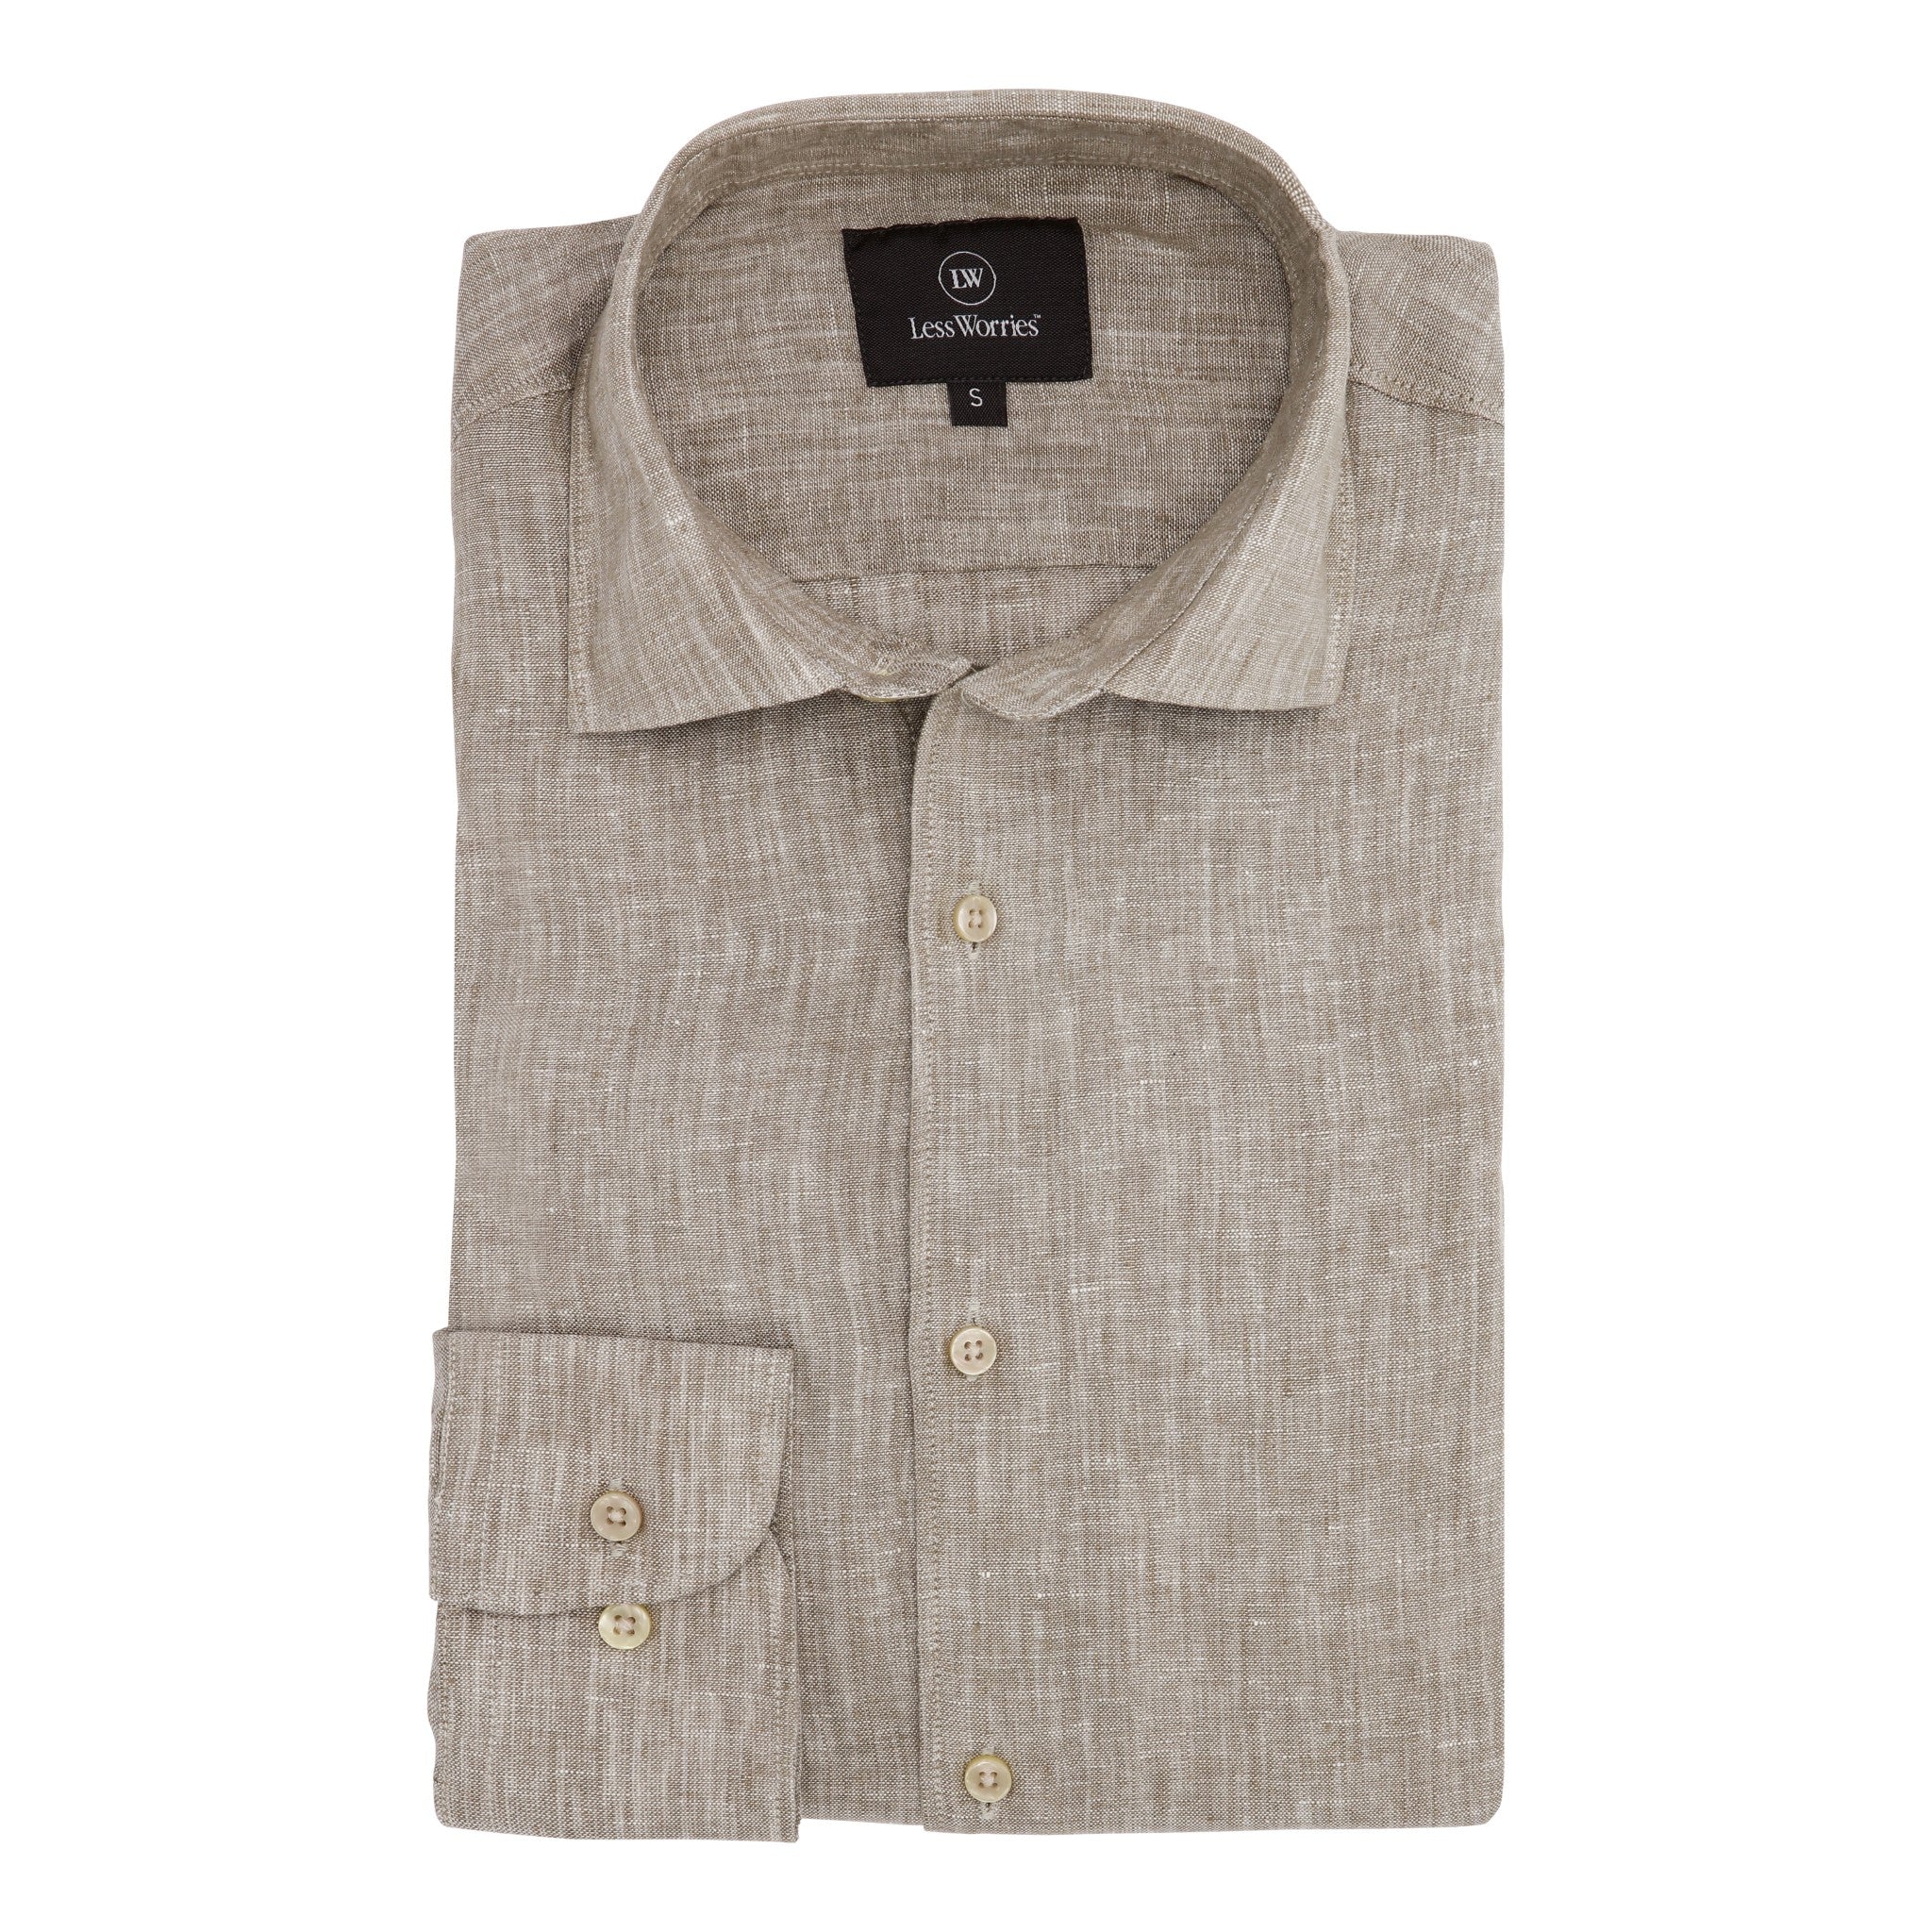 Beige linen shirt made of premium linen.